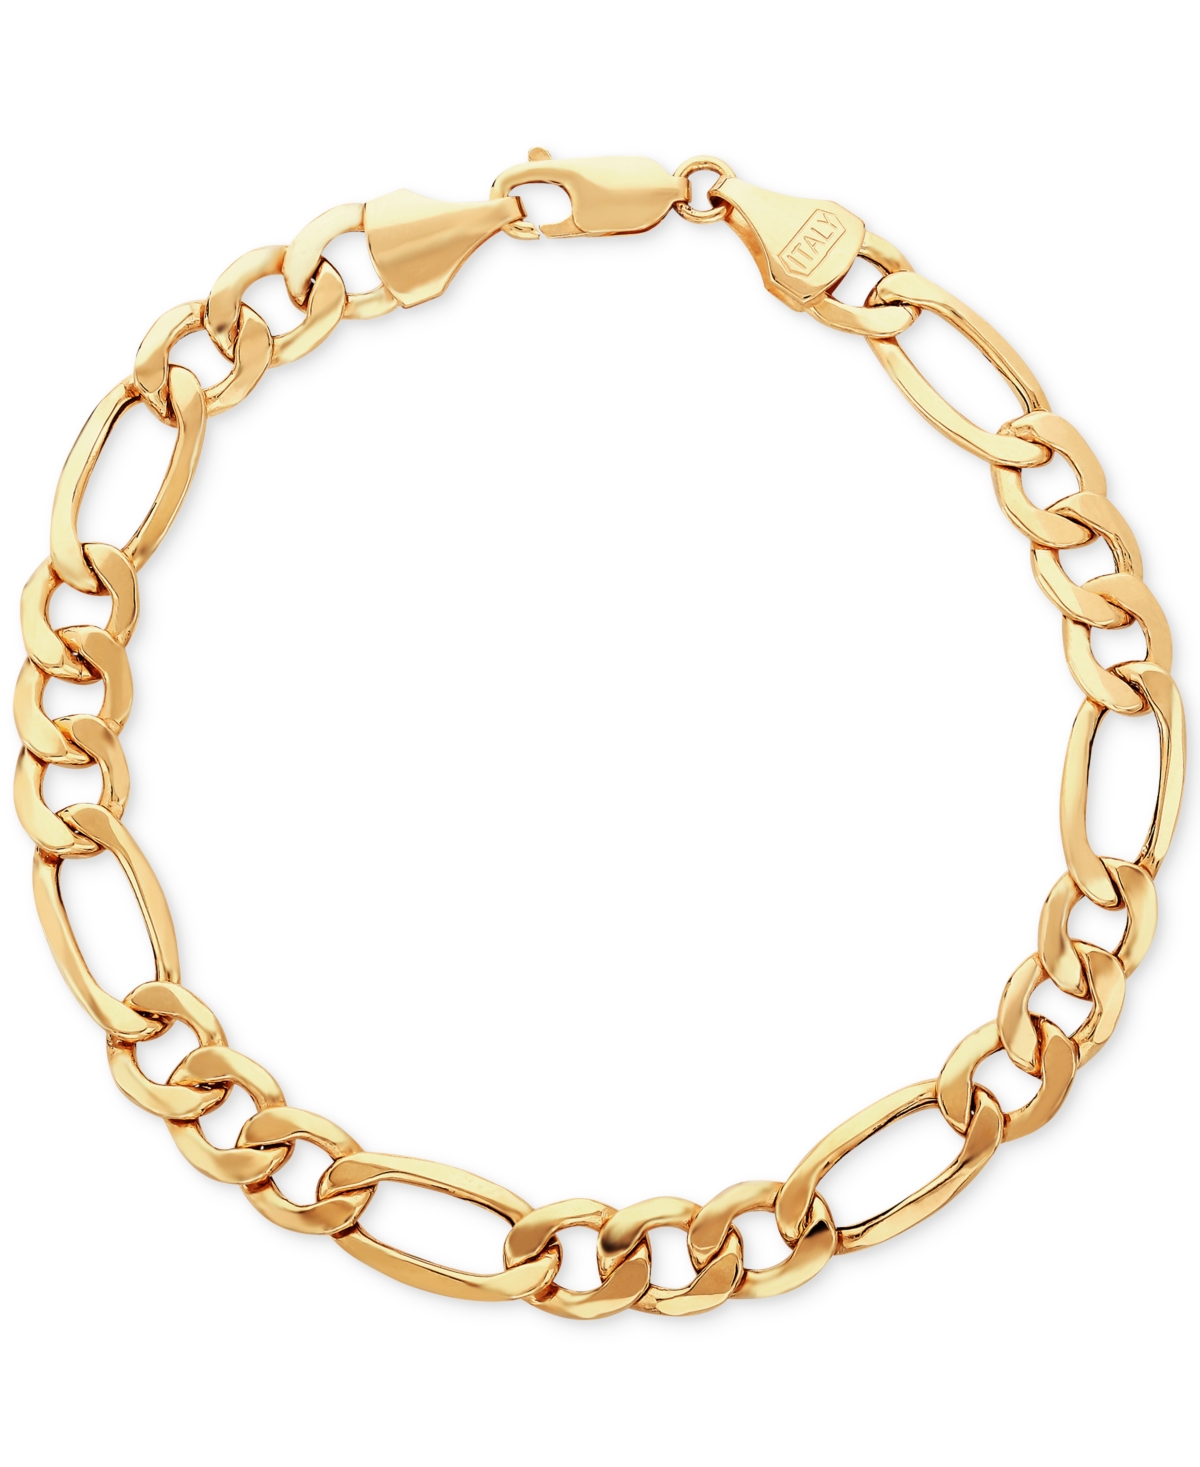 Men's Figaro Link Bracelet in 10k Gold - Yellow Gold